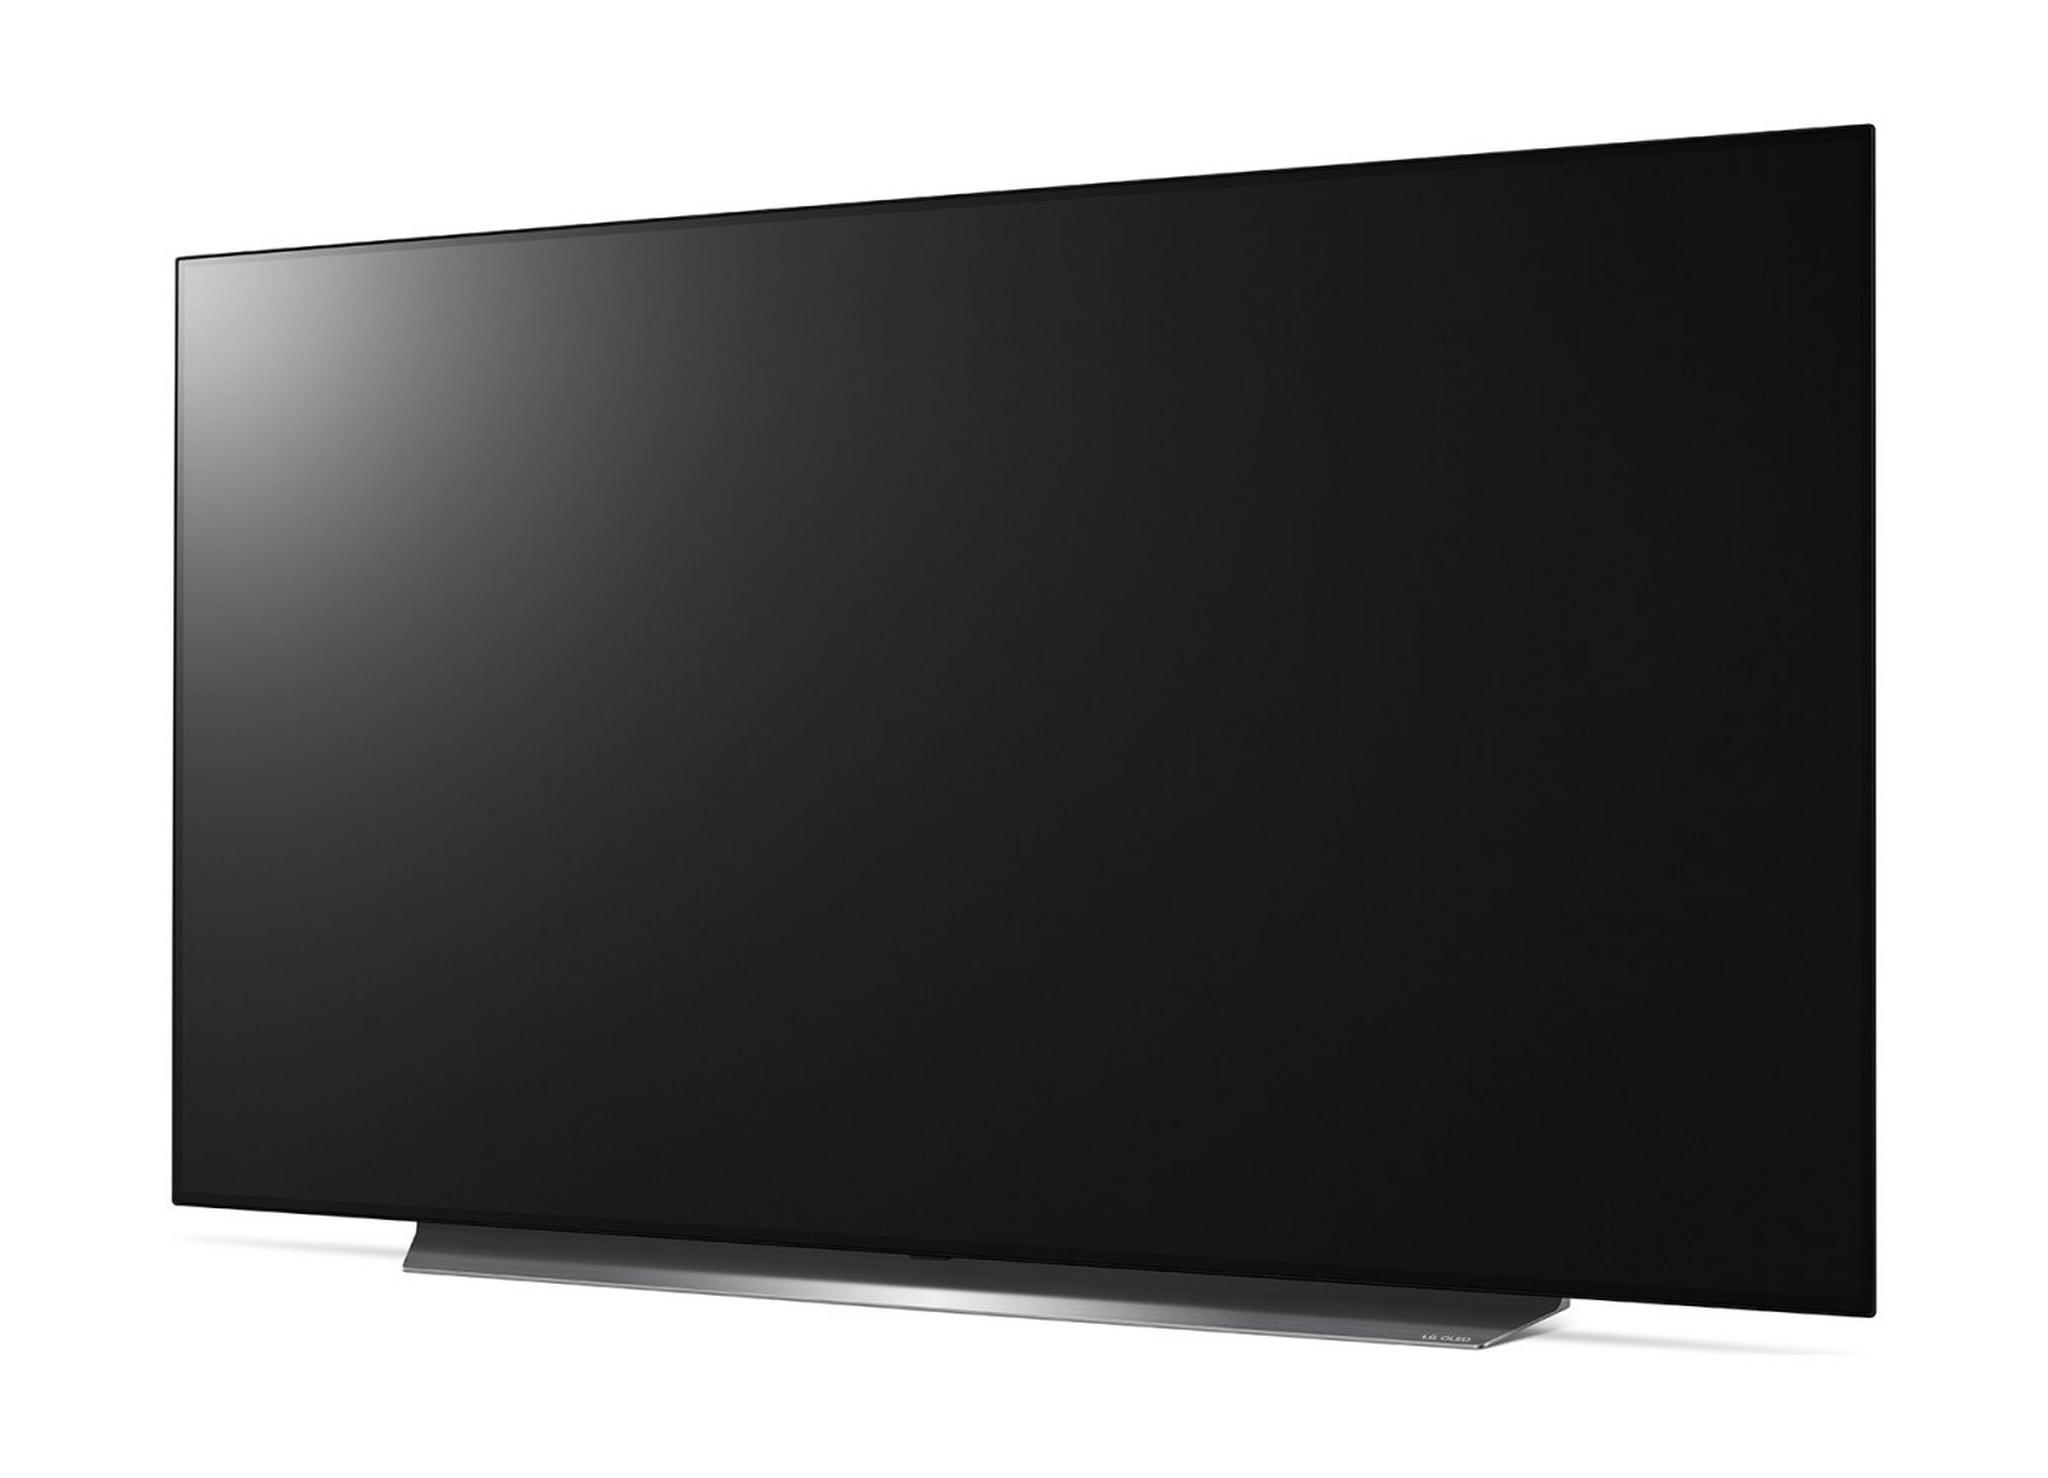 LG 55-inch 4K HDR Smart OLED TV - (55C9PVA)